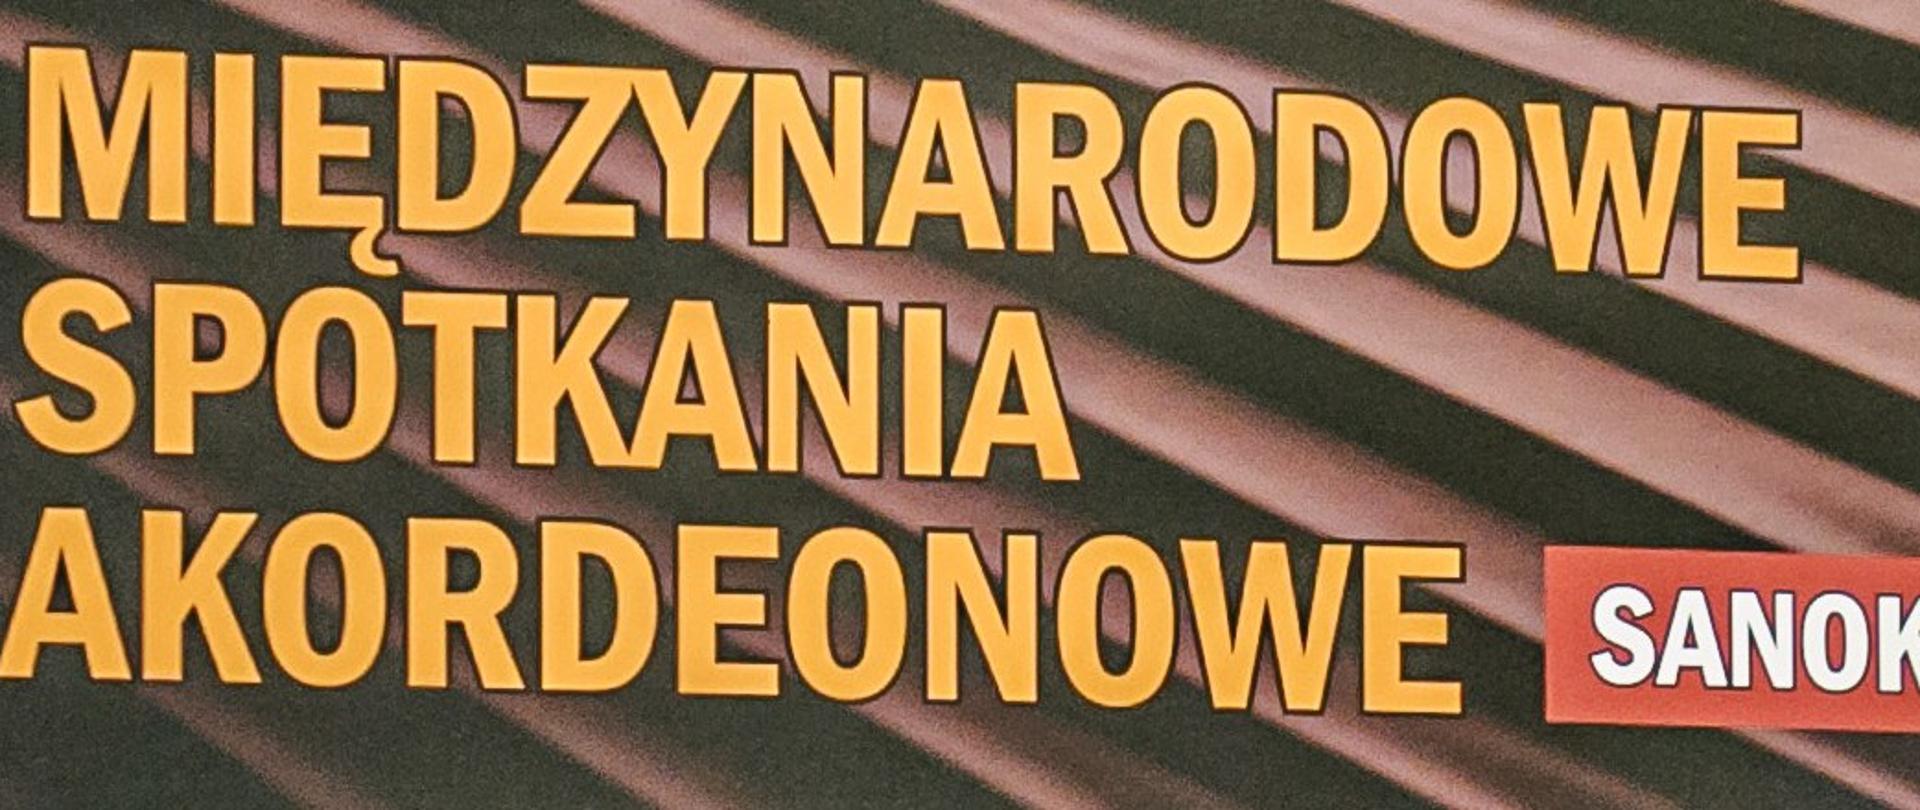 Międzynarodowe Spotkania Akordeonowe Sanok - logo imprezy, żółte litery na brązowym tle